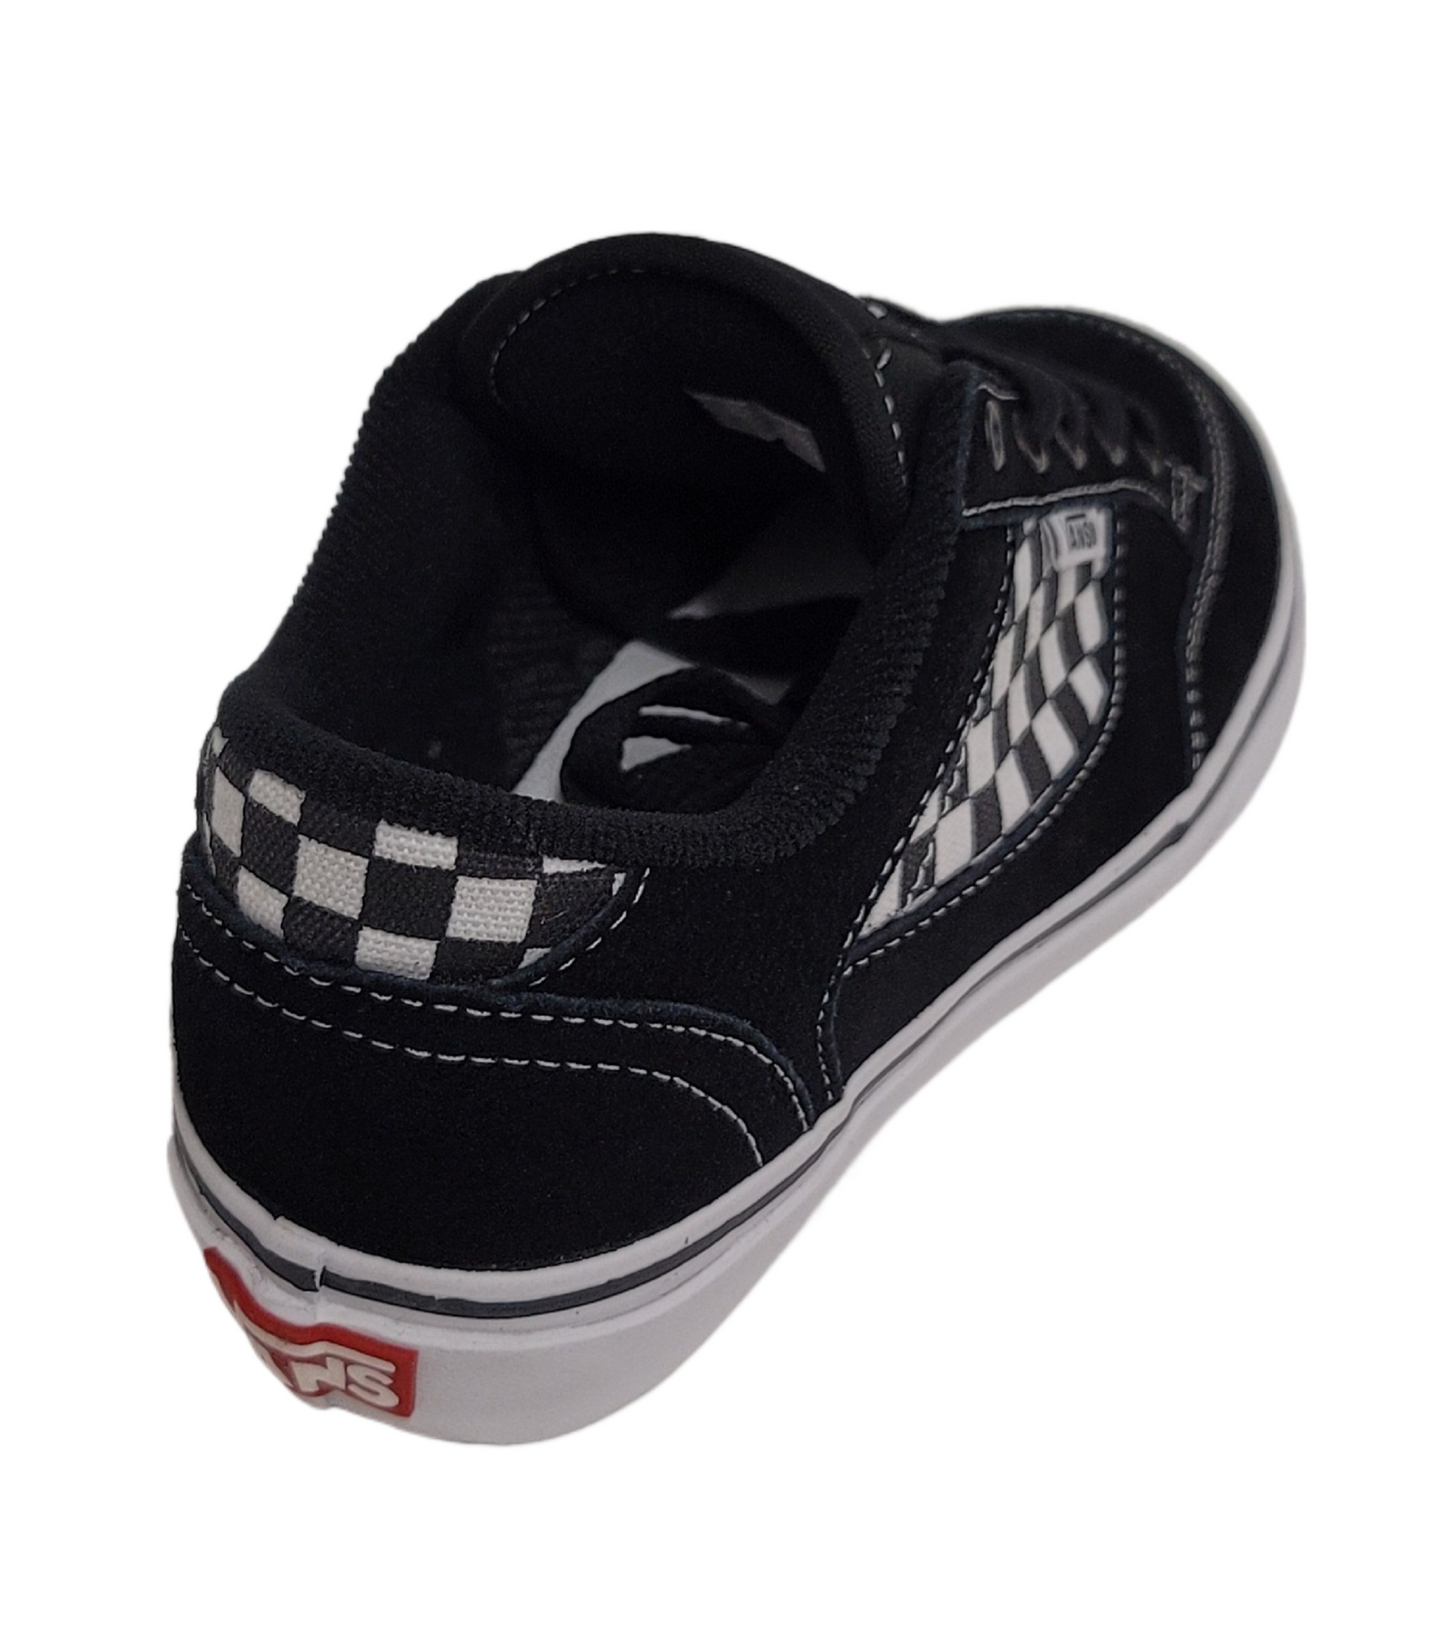 Vans Preschool Brasco Shoe Black / White Checkerboard VN-0XGD56M DEADSTOCK AS IS